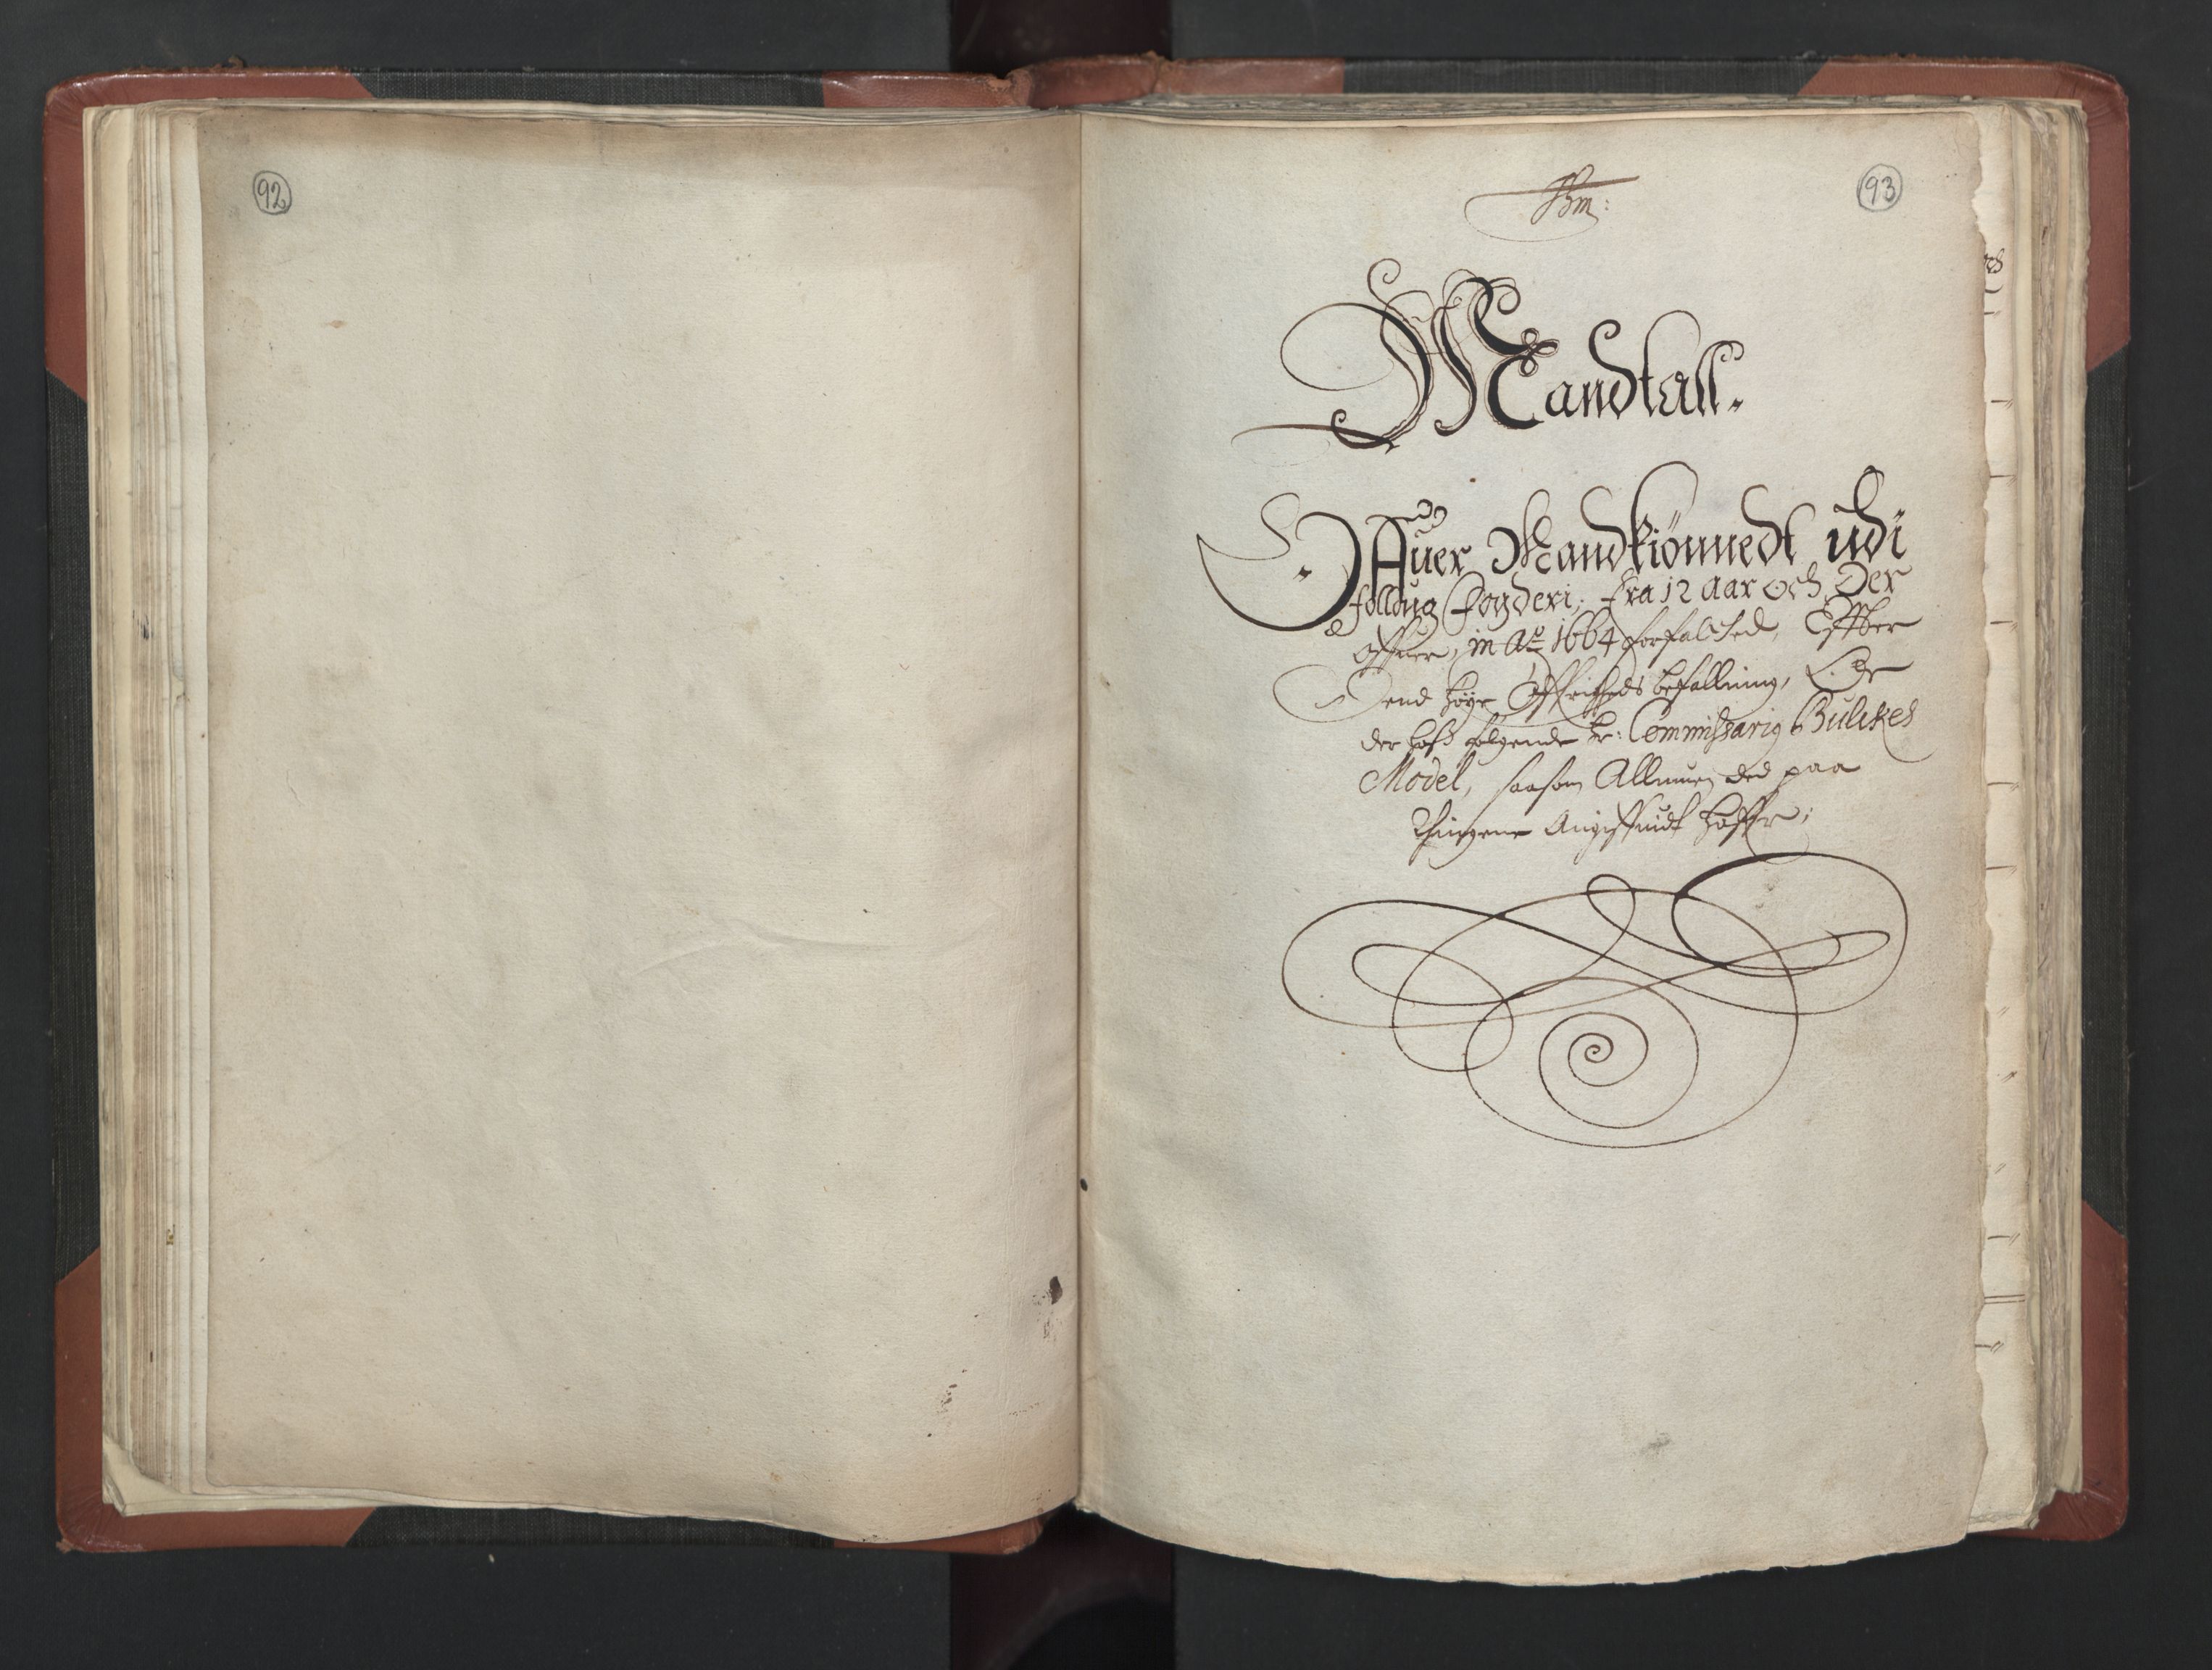 RA, Bailiff's Census 1664-1666, no. 2: Aker fogderi, Follo fogderi, Nedre Romerike fogderi and Øvre Romerike fogderi, 1664, p. 92-93